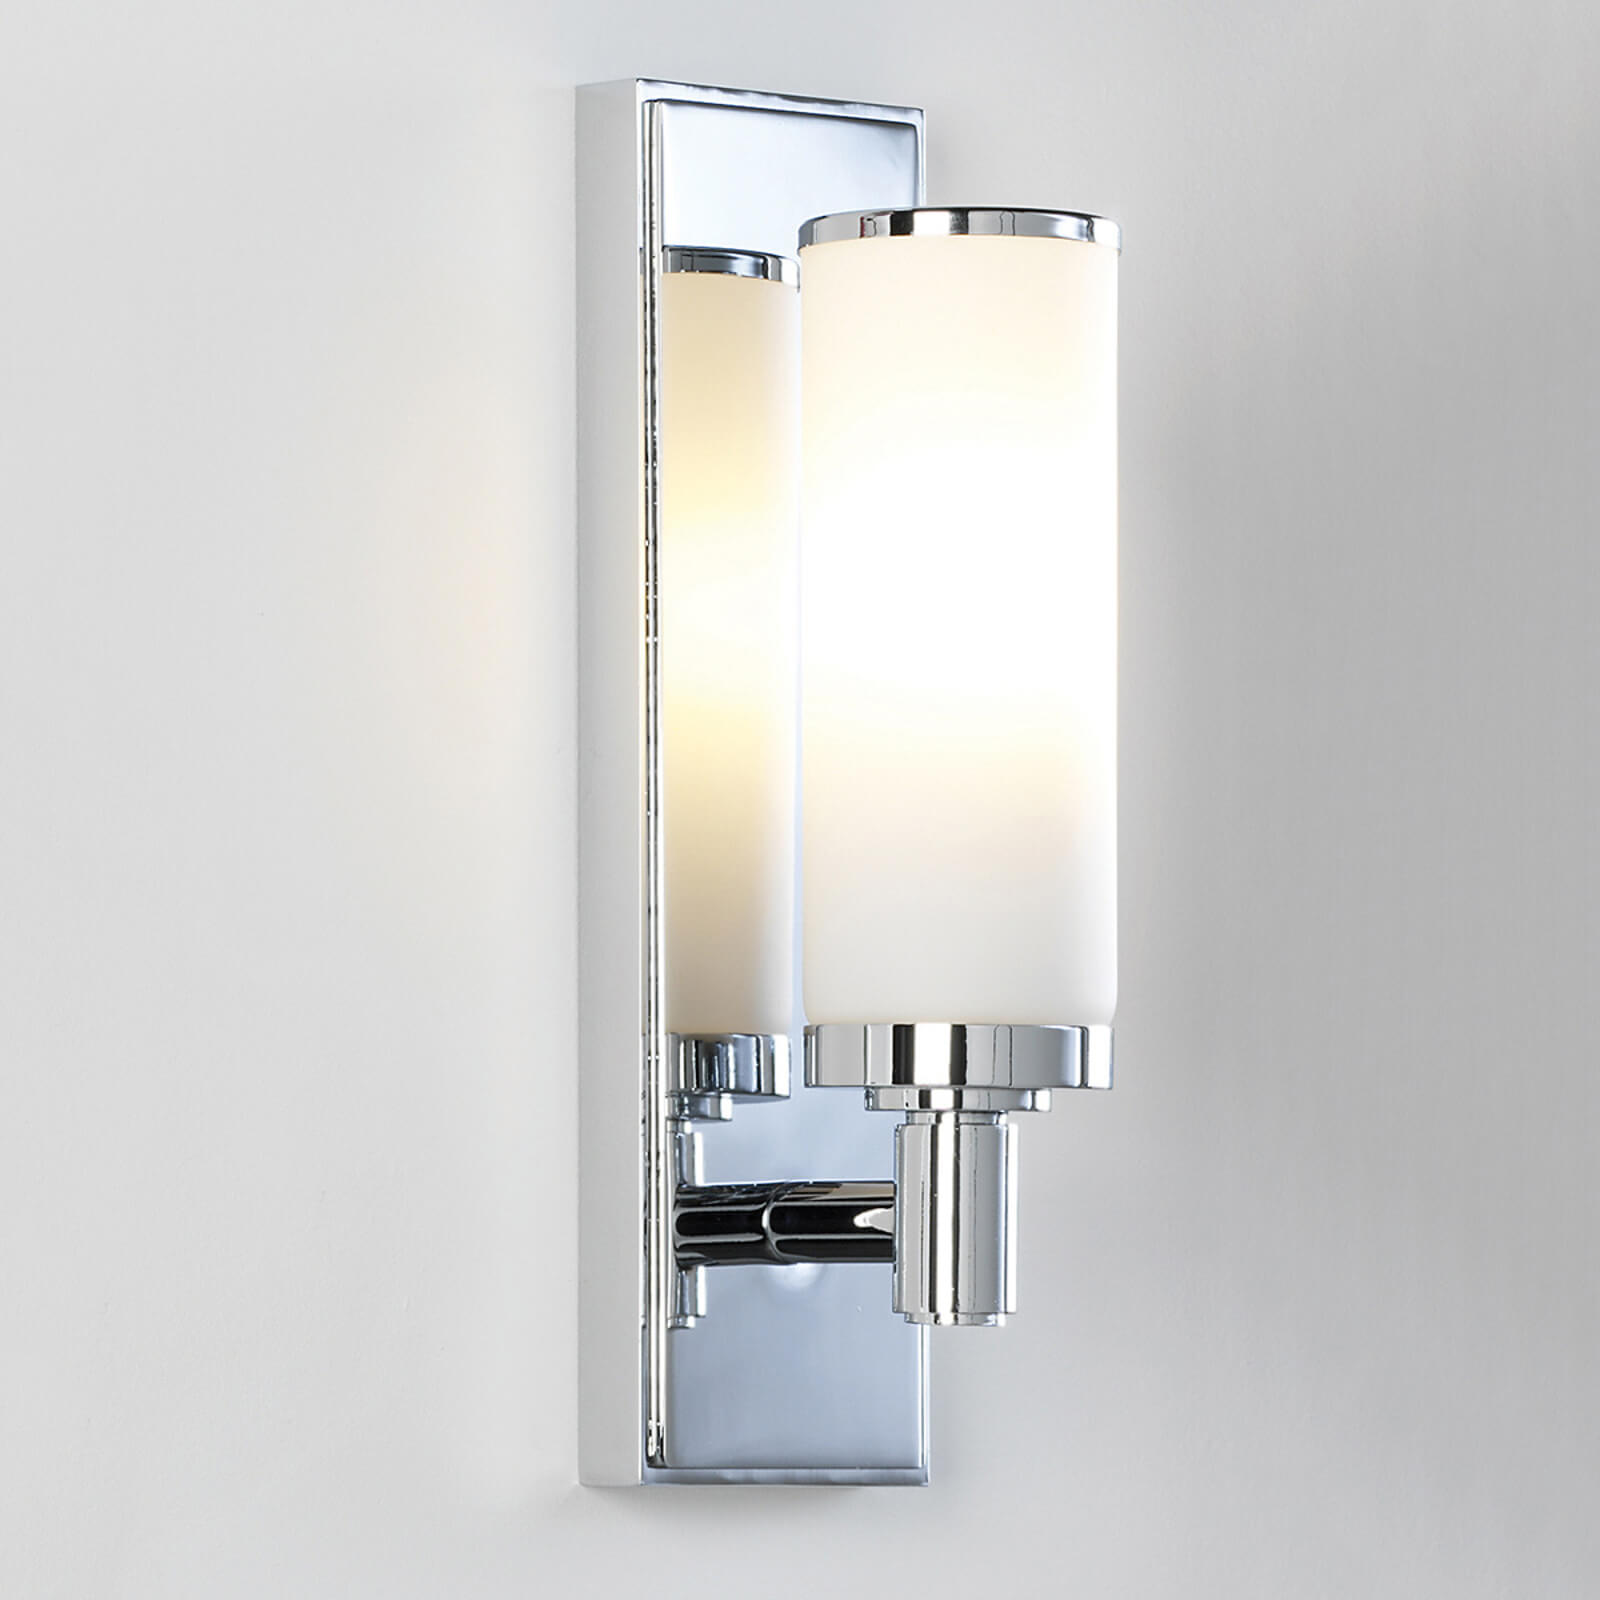 chrome wall bathroom light